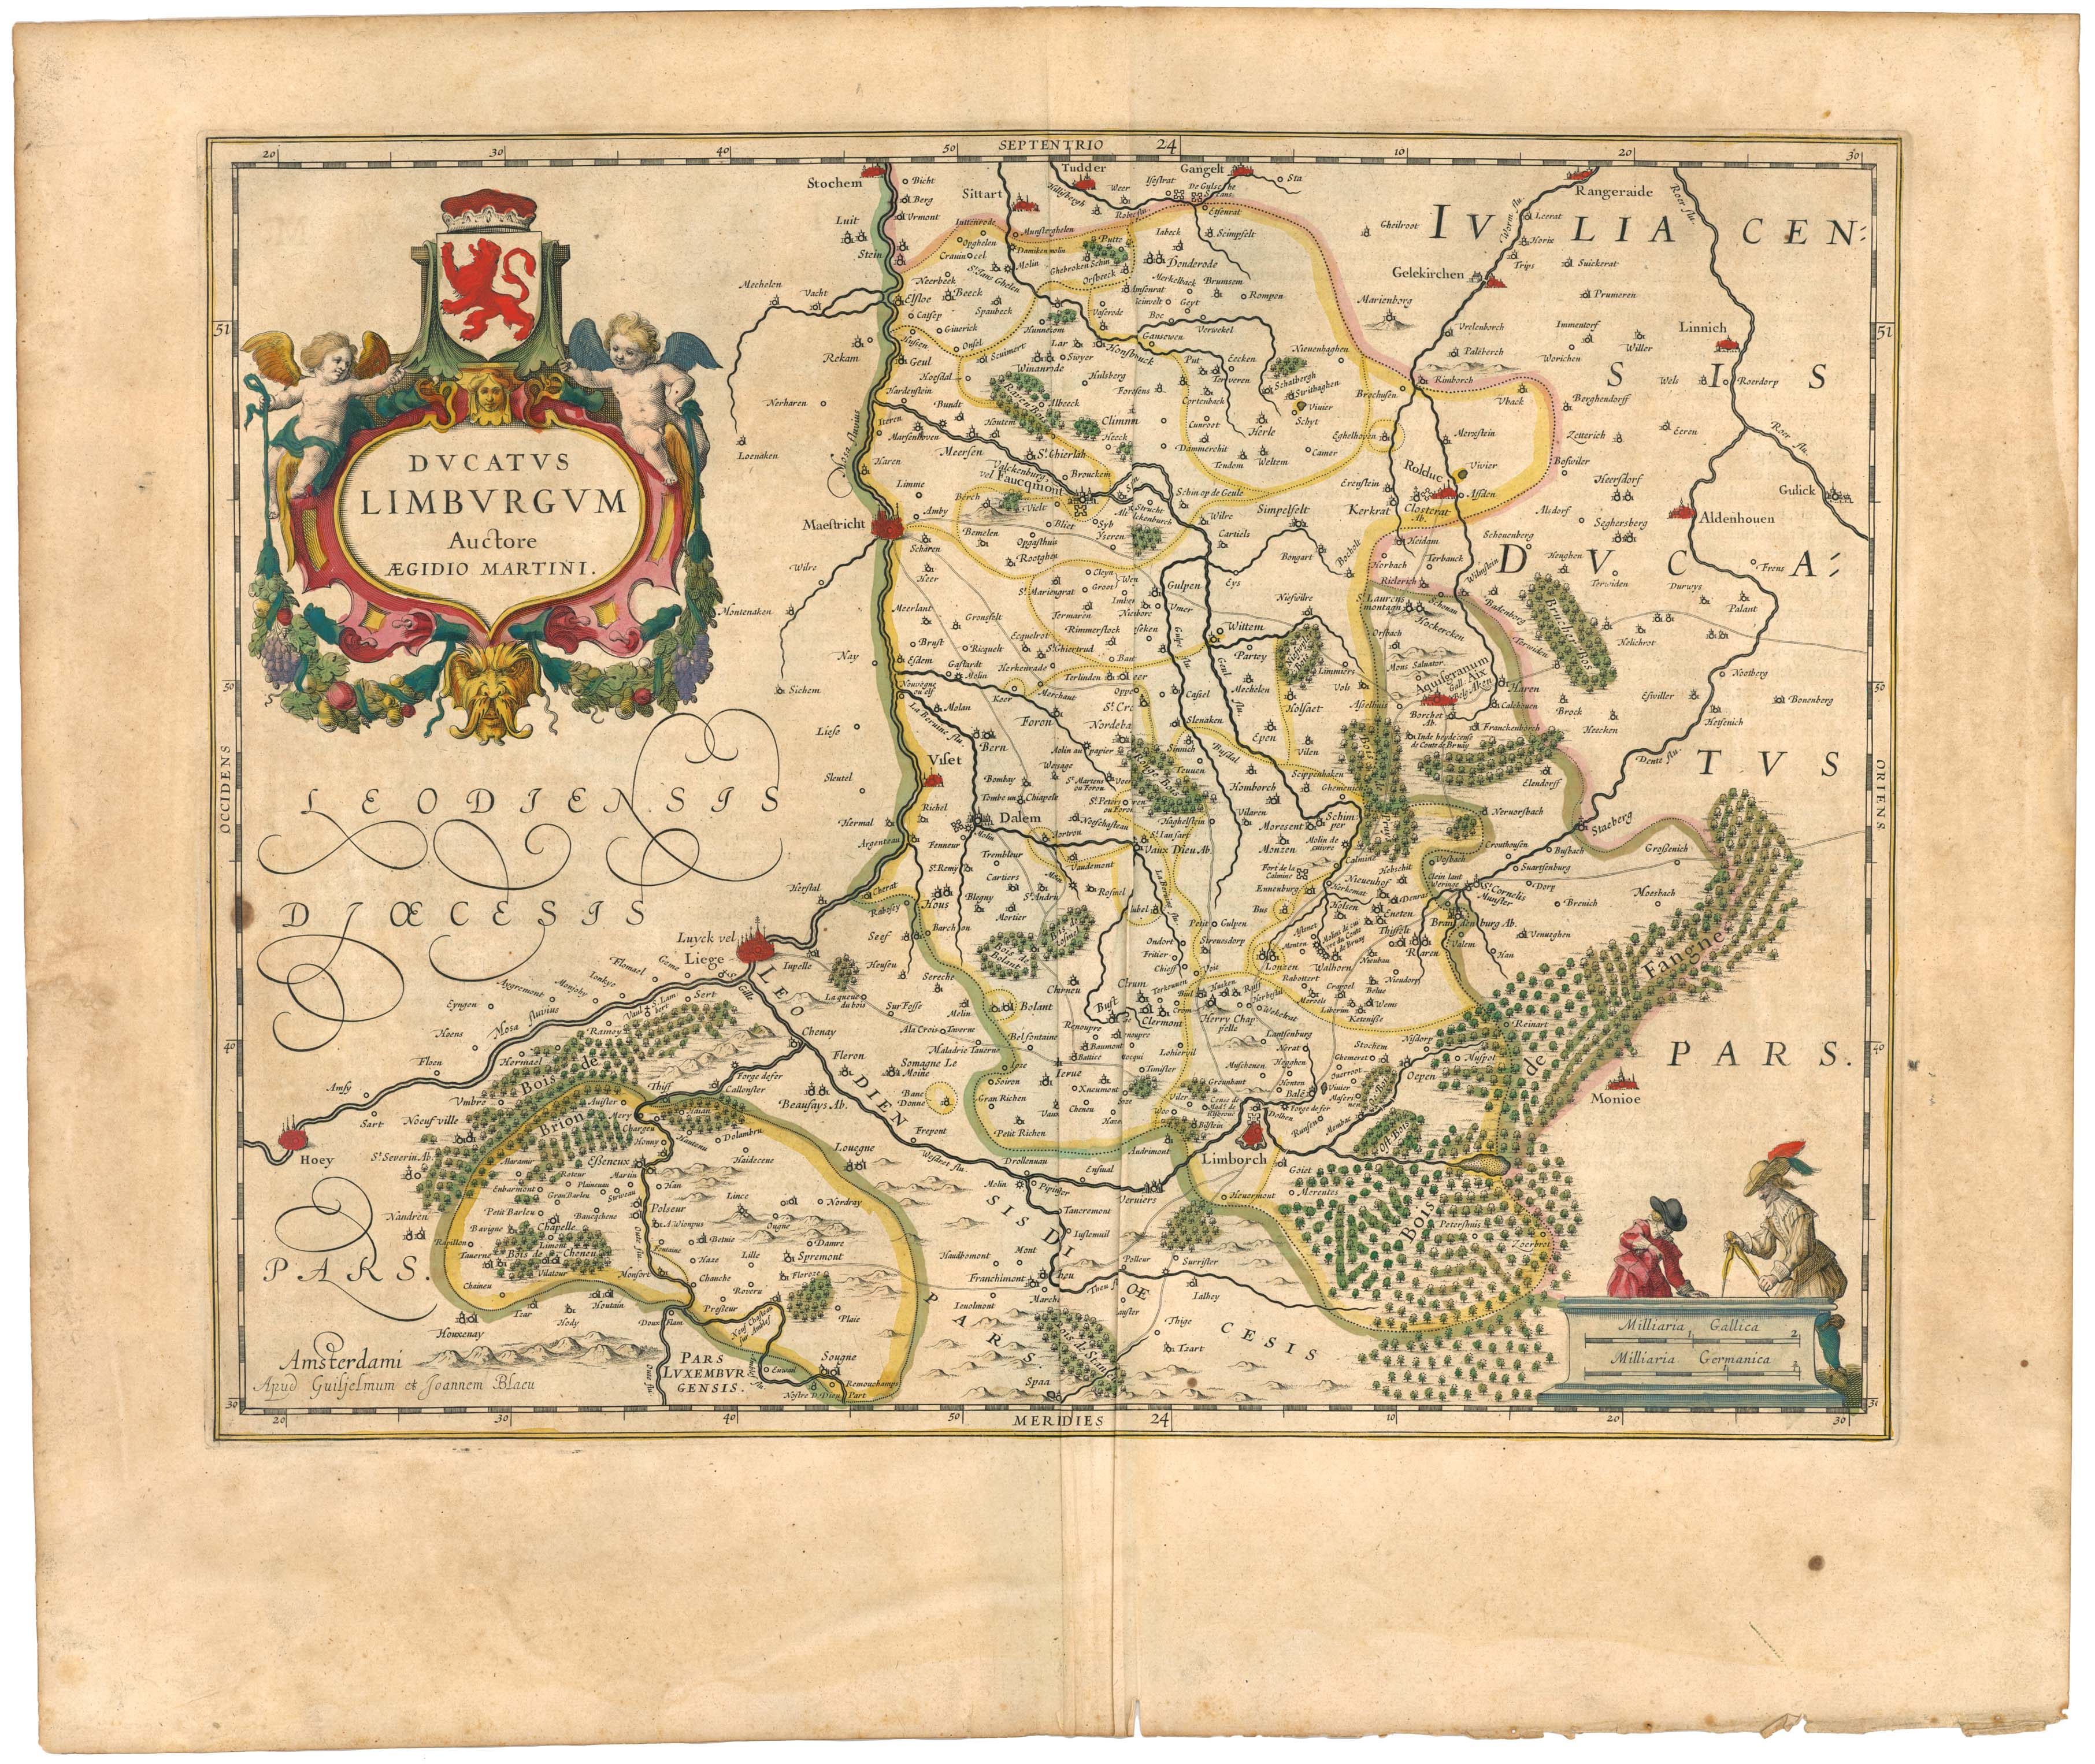 Blaeu 1645 - Ducatus Limburgum